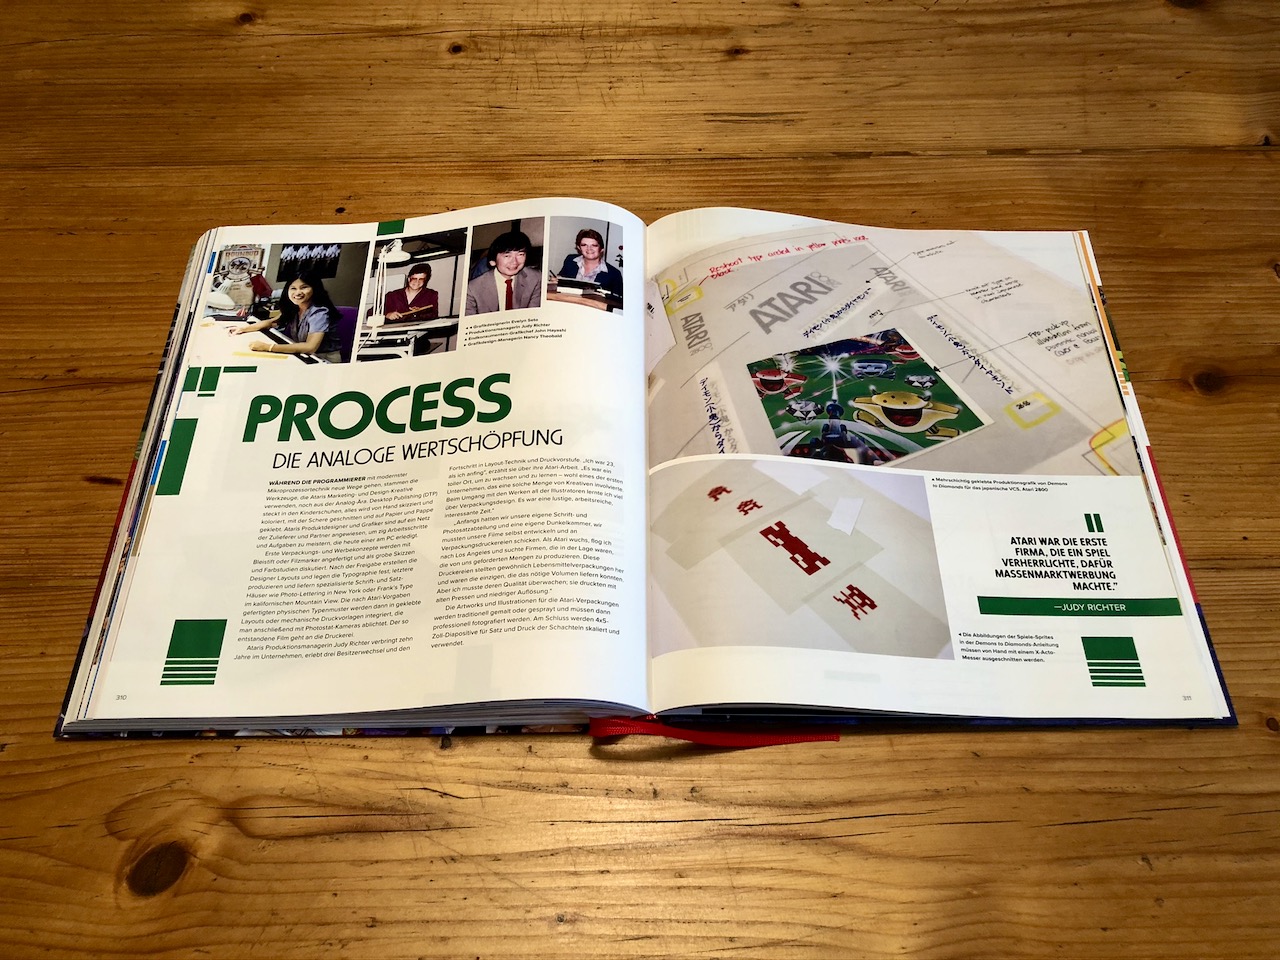 Das interessante Kapitel "Process - Die analoge Wertschöpfung" beleuchtet den Produktions- und Vermarktungsprozess von Videospielen, den Atari maßgeblich begründete. (Bild: André Eymann)